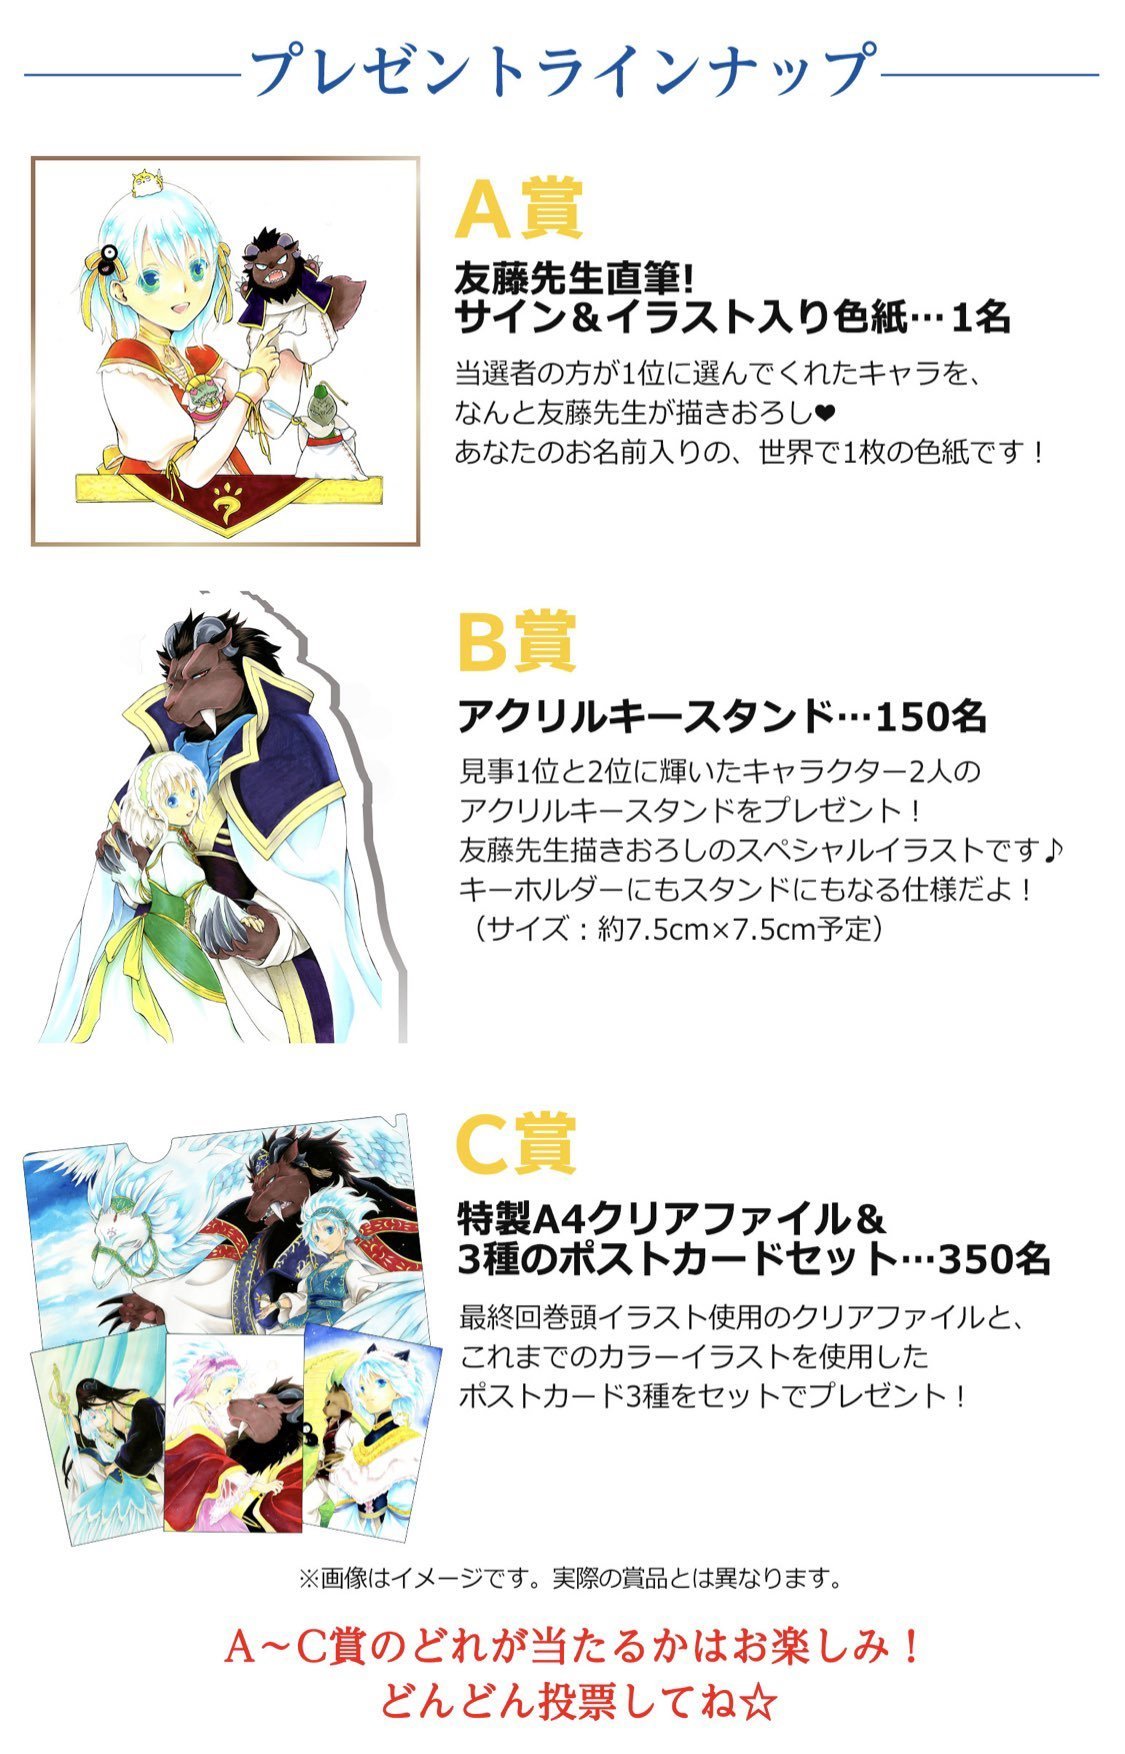 漫画 贄姫と獣の王 の人気キャラクターコンテストがはなとゆめの特設サイトで9月5日まで開催 マンガのことを書いたブログ